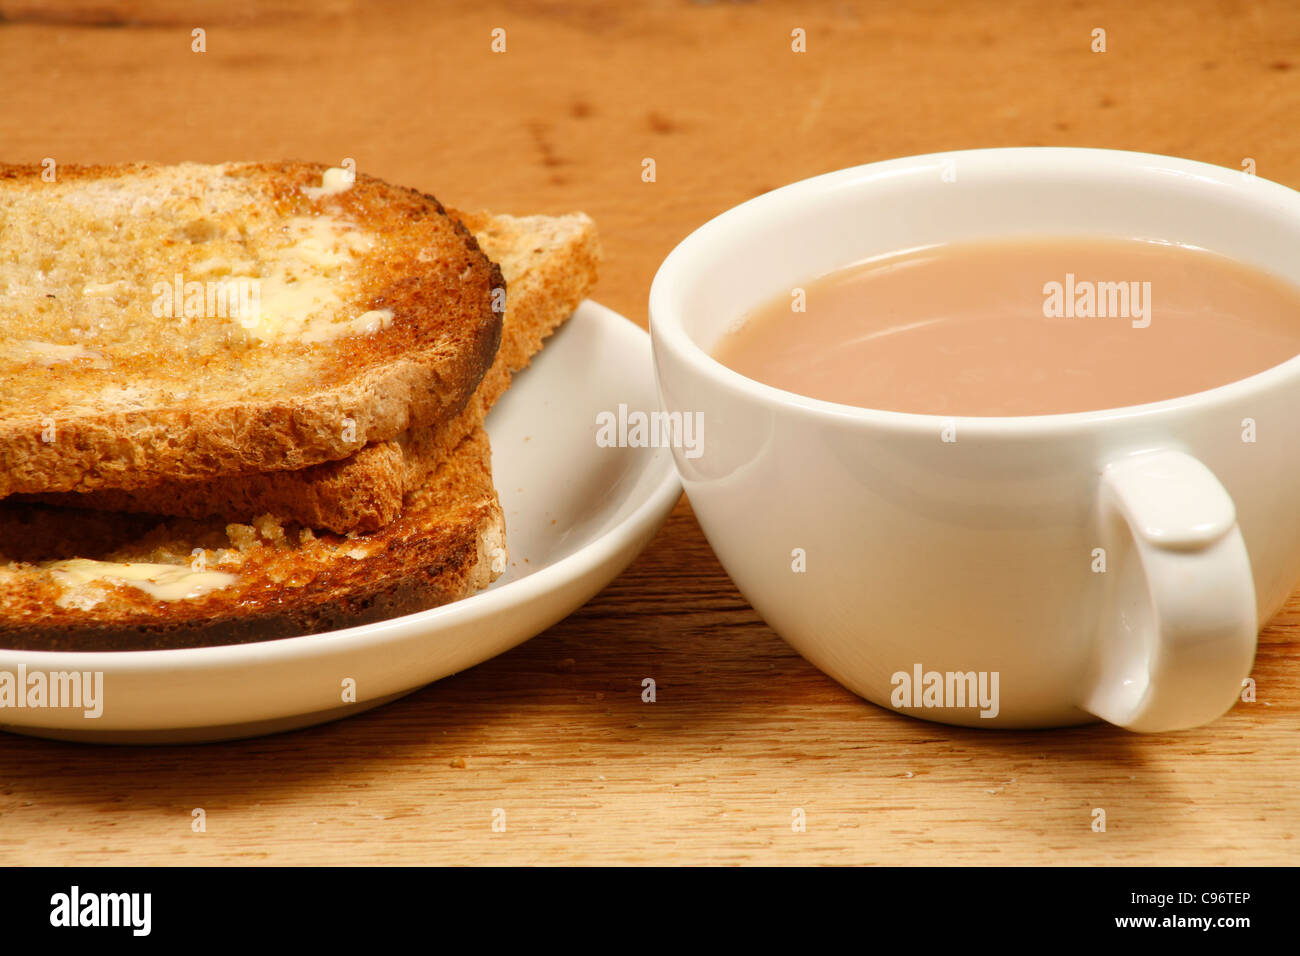 tea-and-toast-C96TEP.jpg